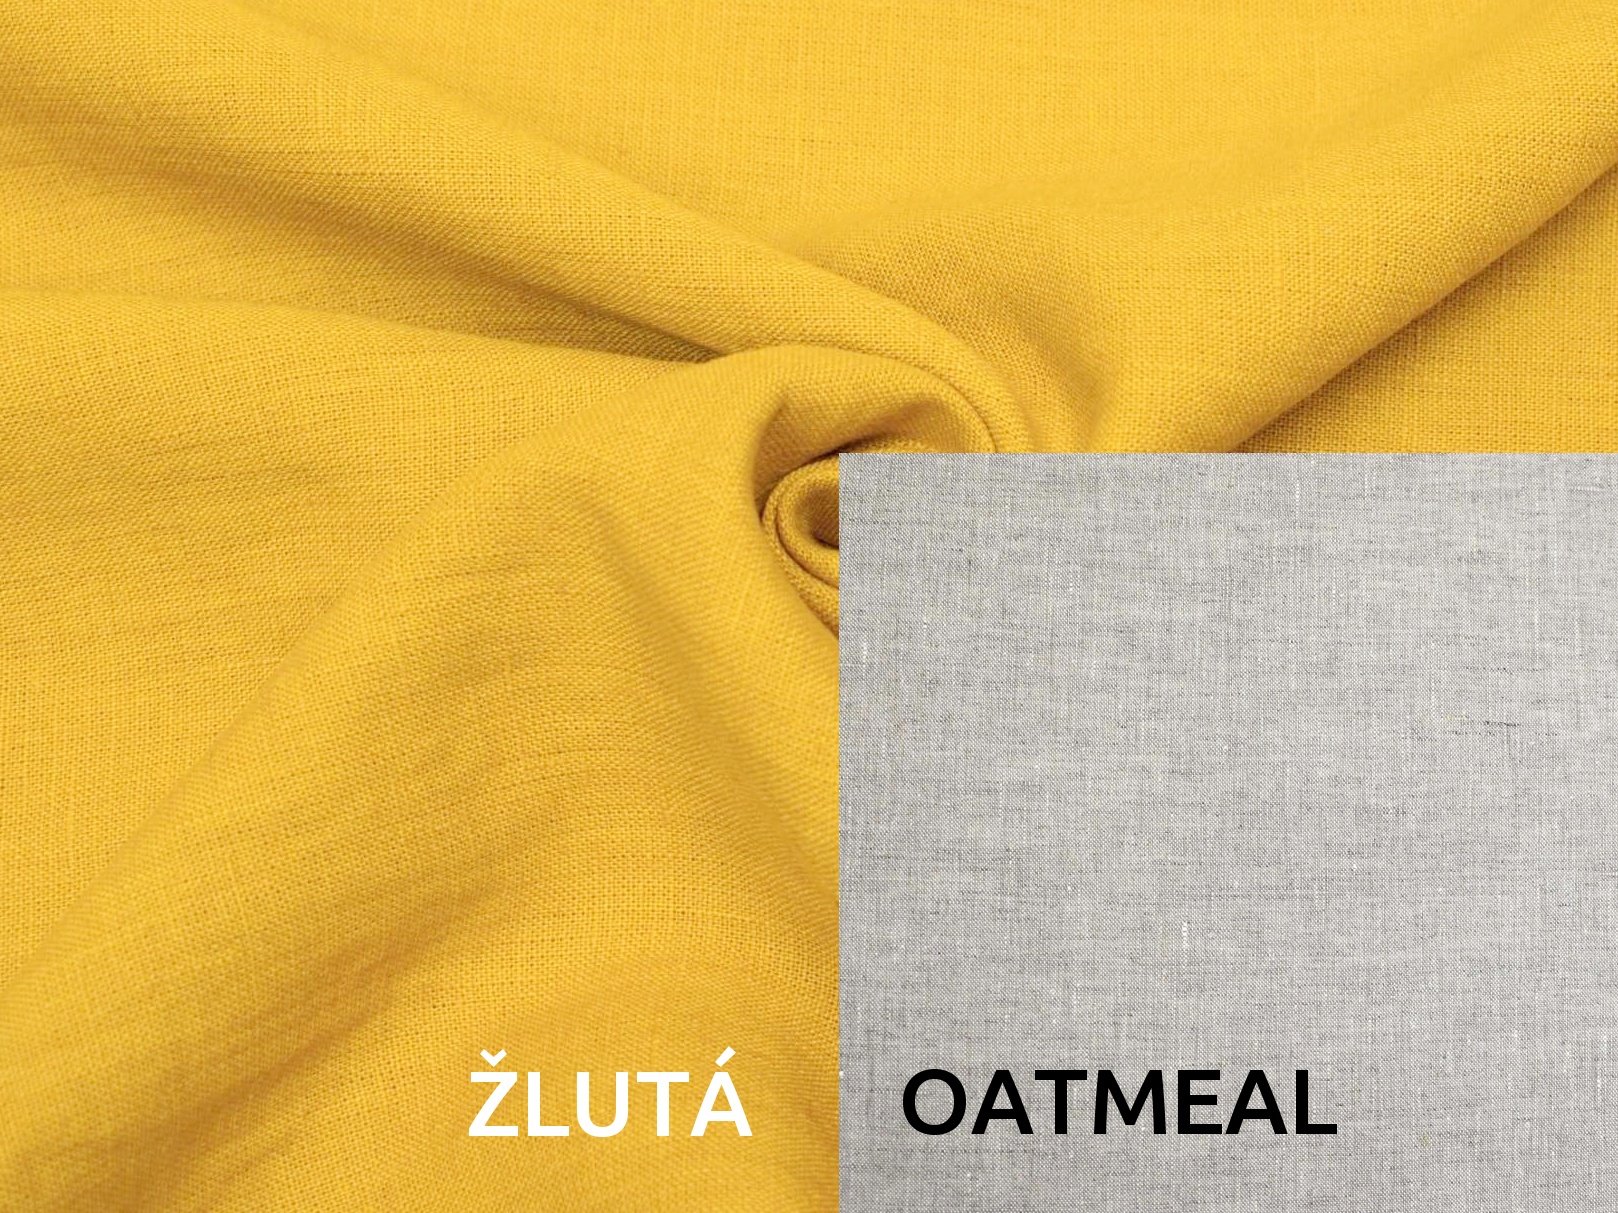 Lněná deka s prošitím žlutá, oatmeal